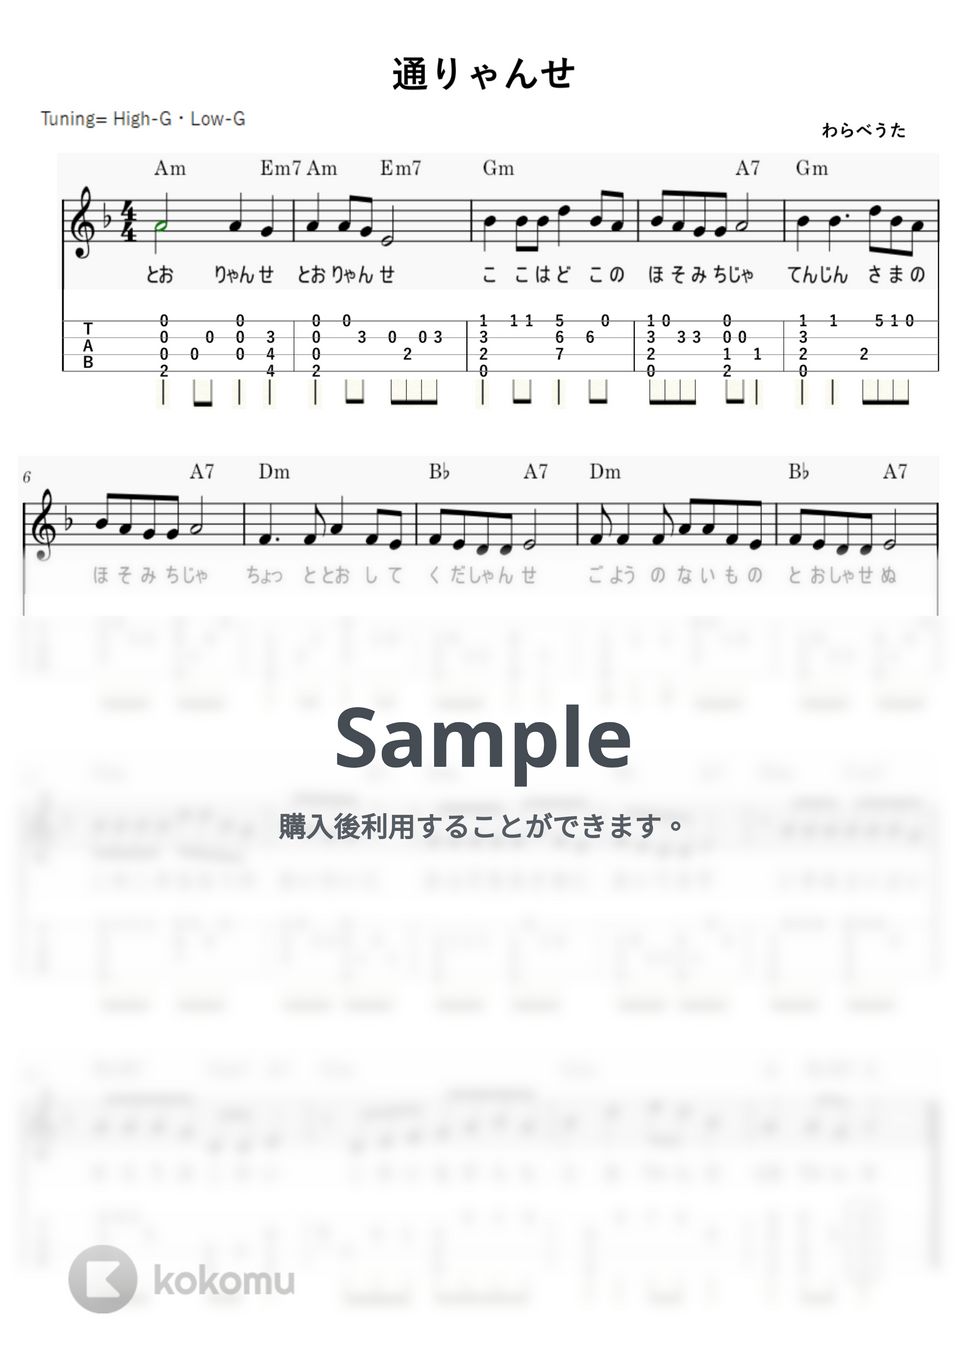 通りゃんせ (ｳｸﾚﾚｿﾛ/High-G・Low-G/初級～中級) by ukulelepapa